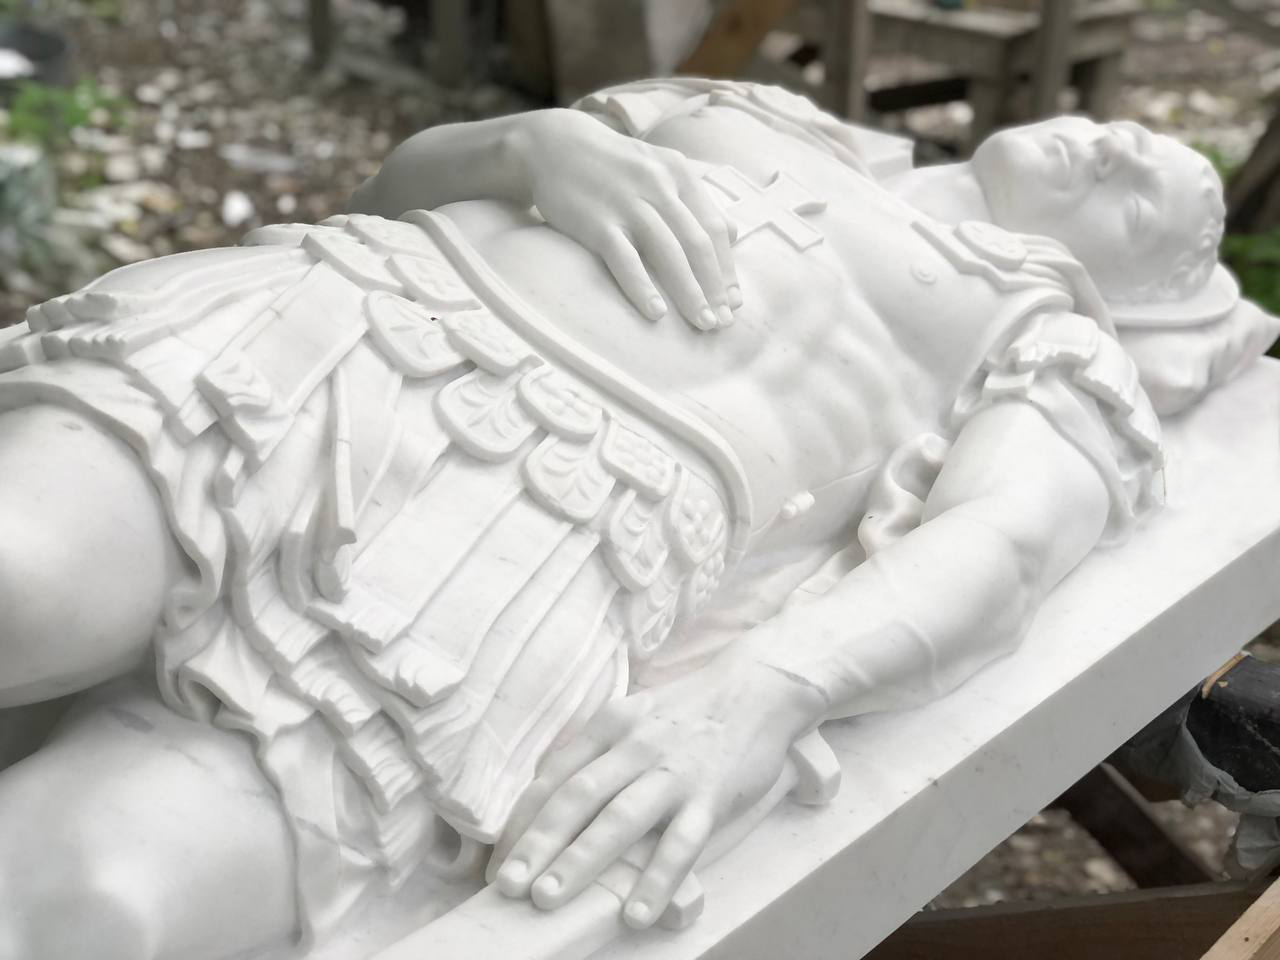 Скульптура Св. Себастьяна из белого мрамора